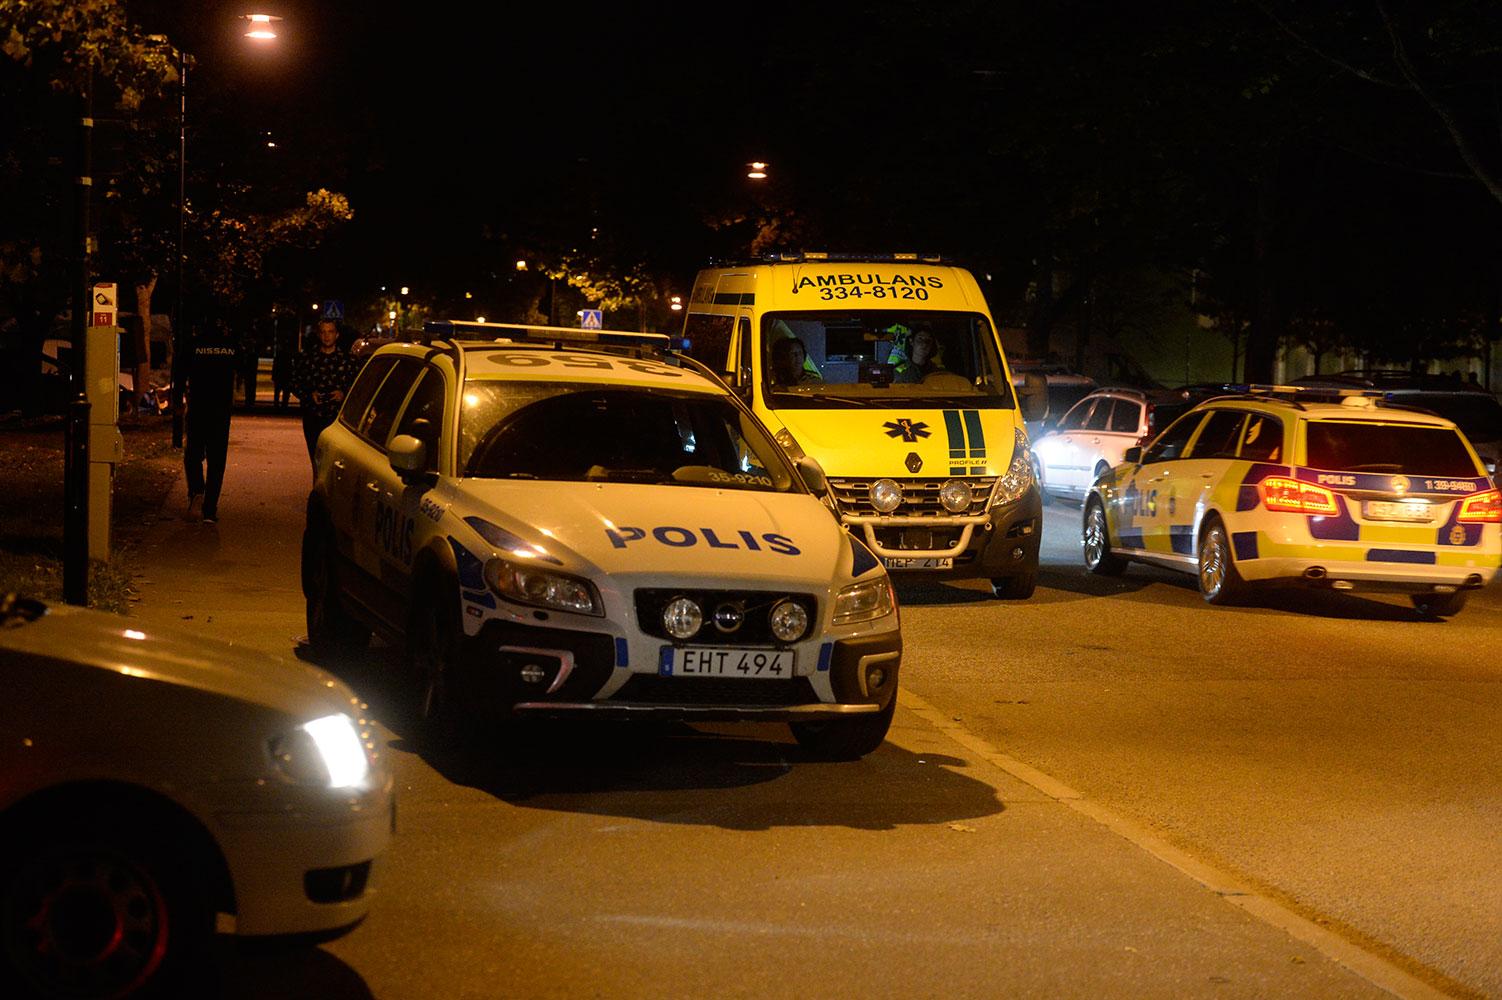 Polis och räddningstjänst i Sollentuna efter skottlossning.